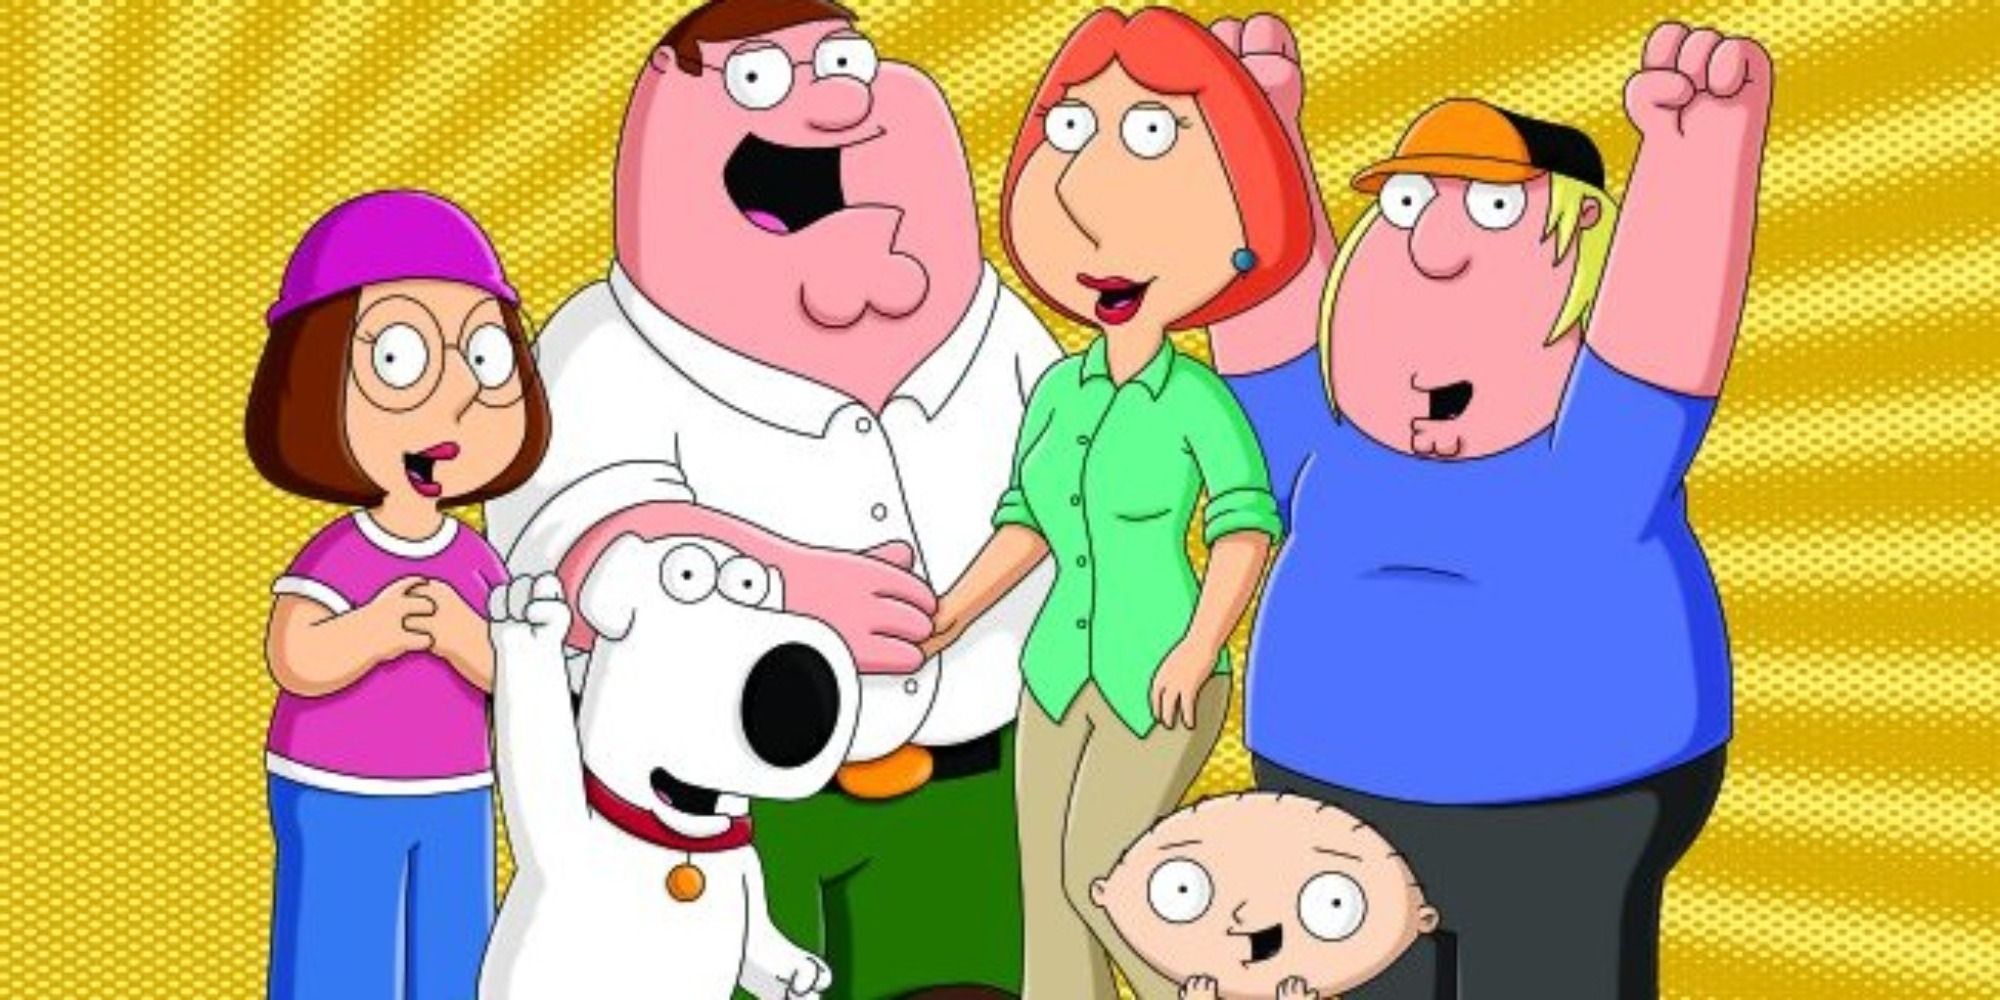 The Family Guy main cast